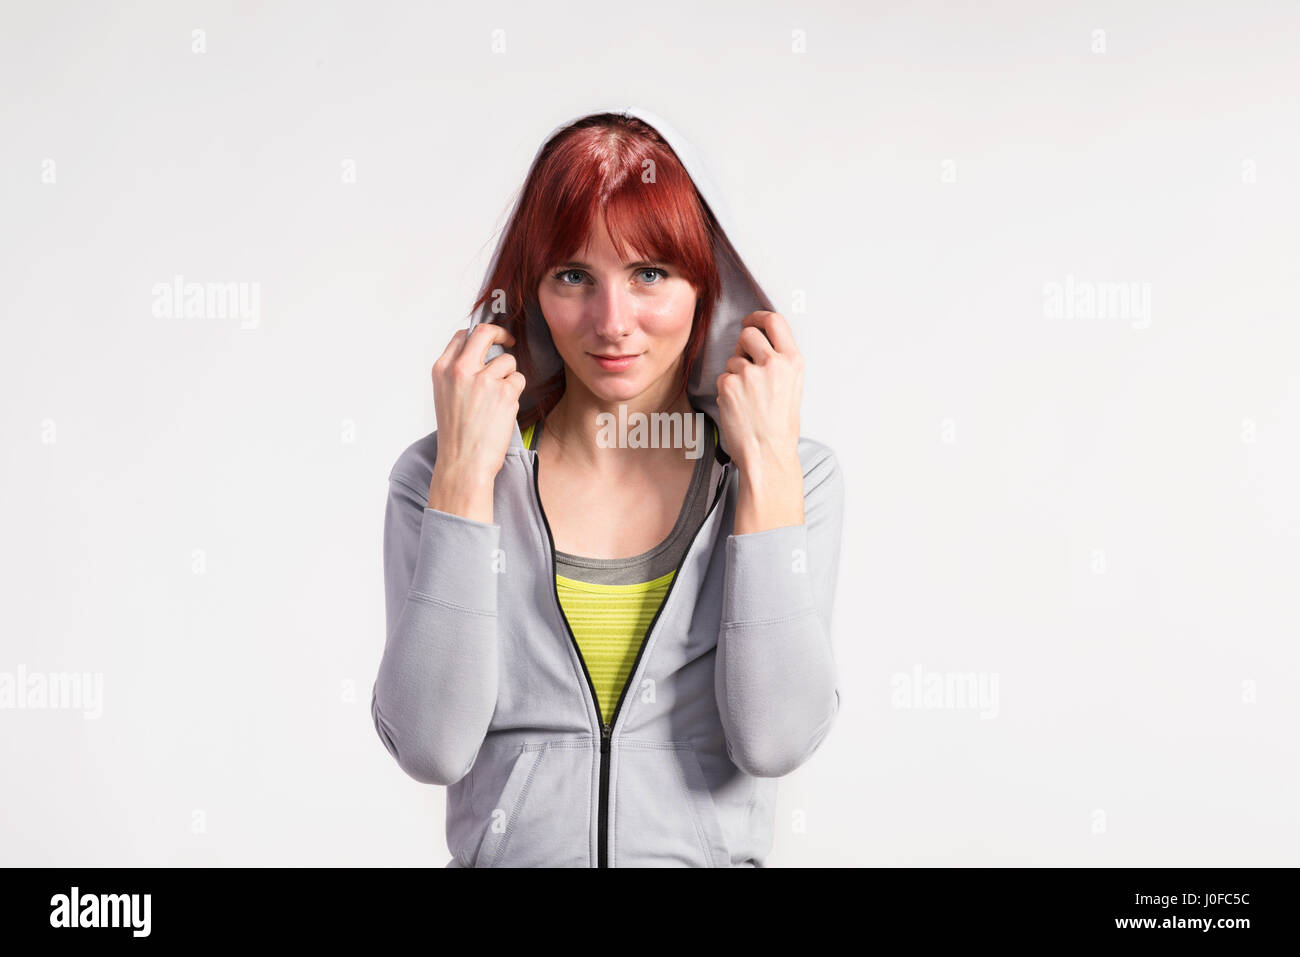 Attraktive junge Fitness-Frau in grauen Sweatshirt mit Kapuze. Studio auf grauem Hintergrund gedreht. Stockfoto